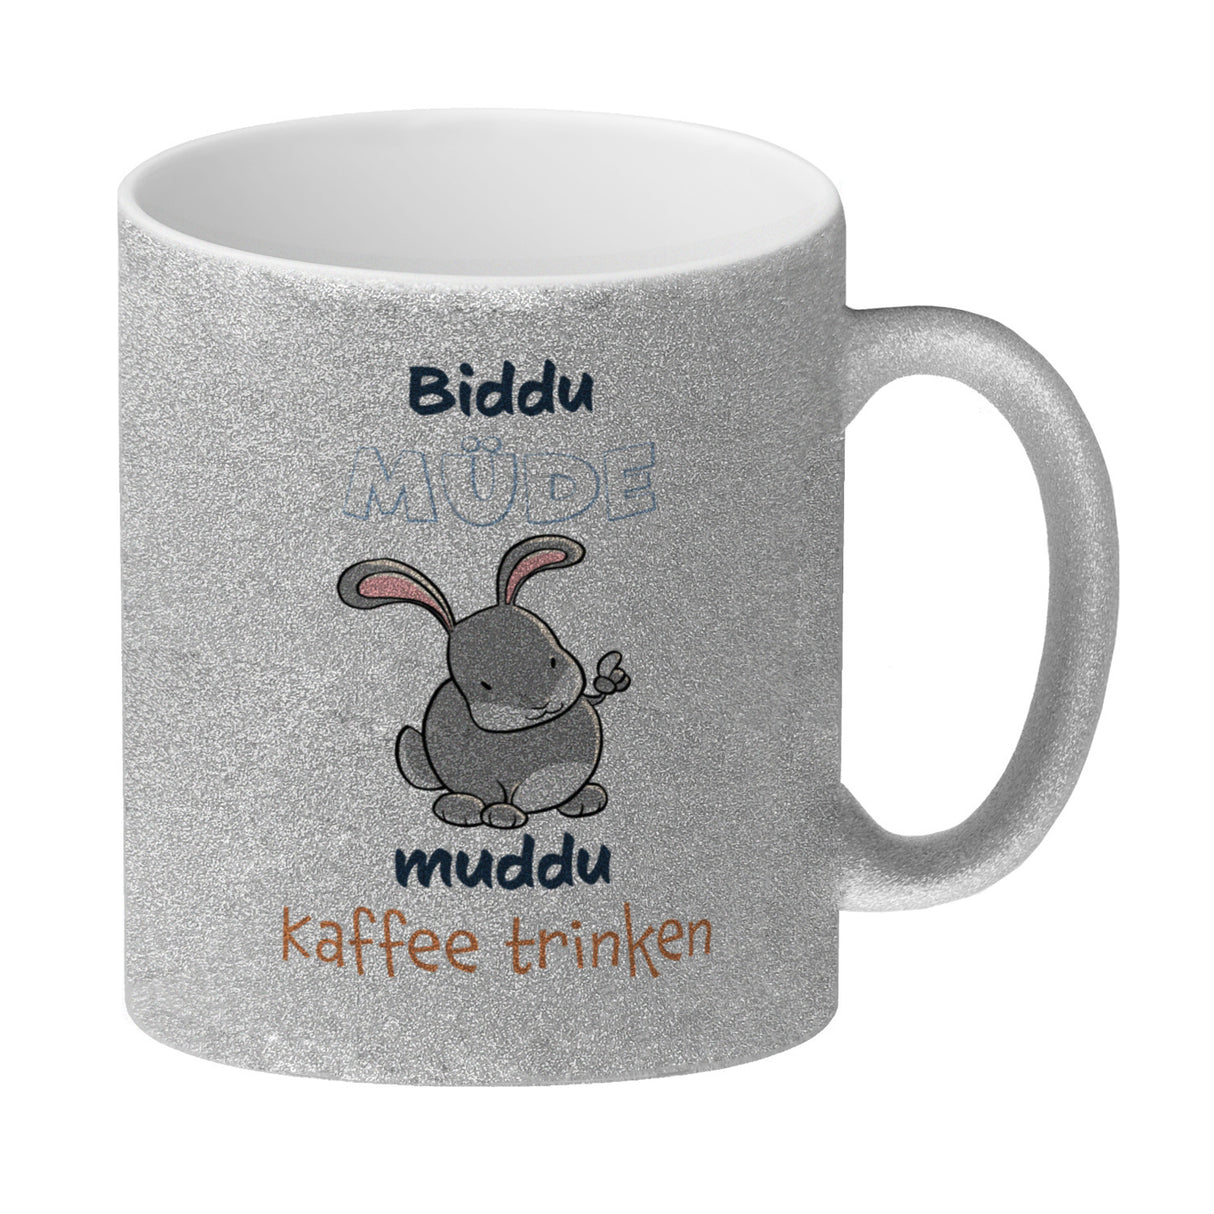 Kaffeebecher mit Hasenmotiv und Spruch - Biddu müde muddu Kaffee trinken